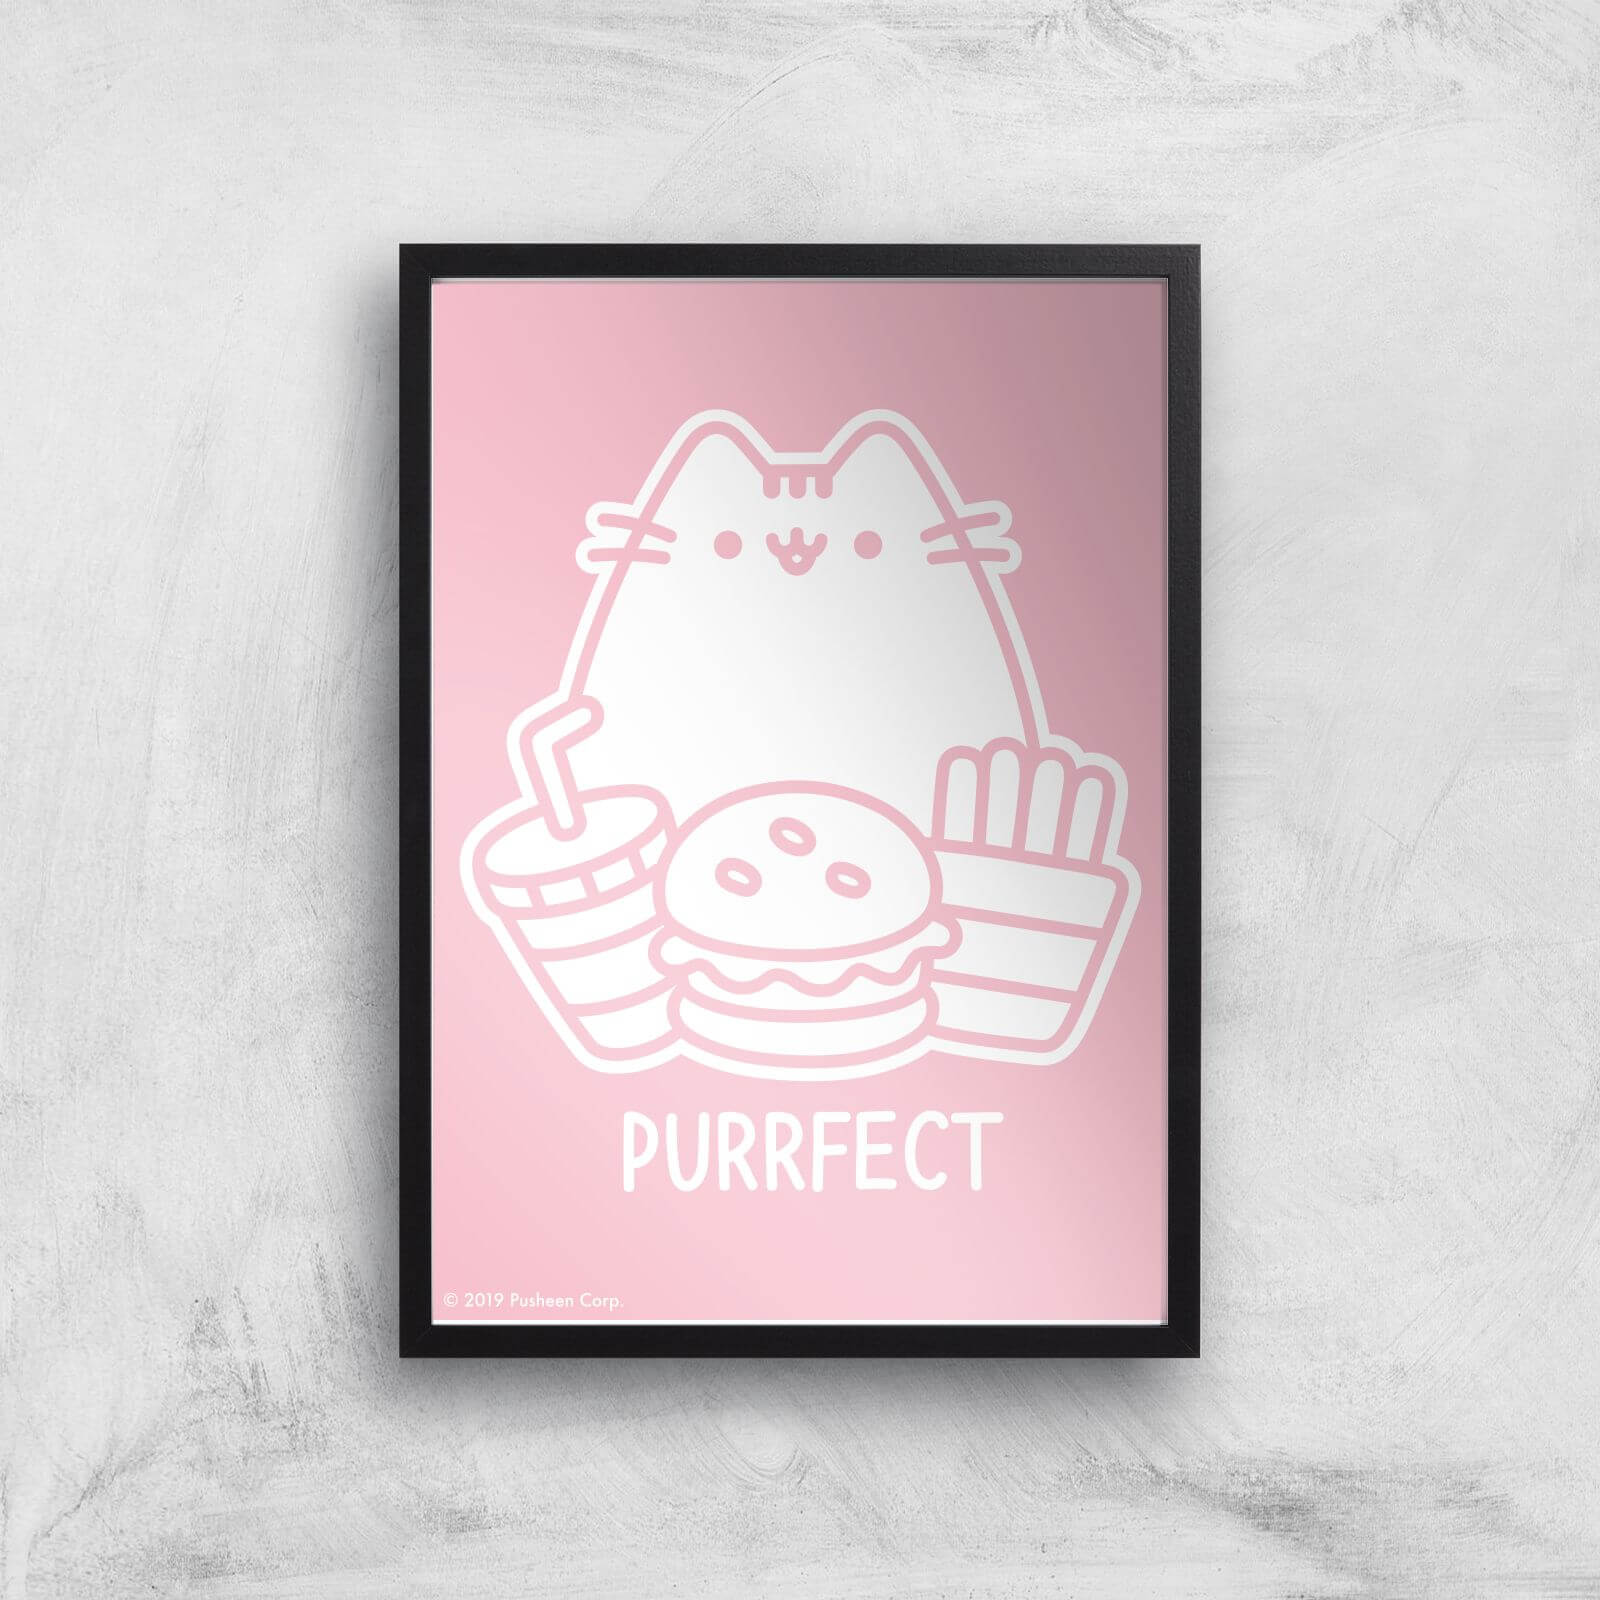 Pusheen Purrfect Junk Food Giclee Art Print - A3 - Black Frame